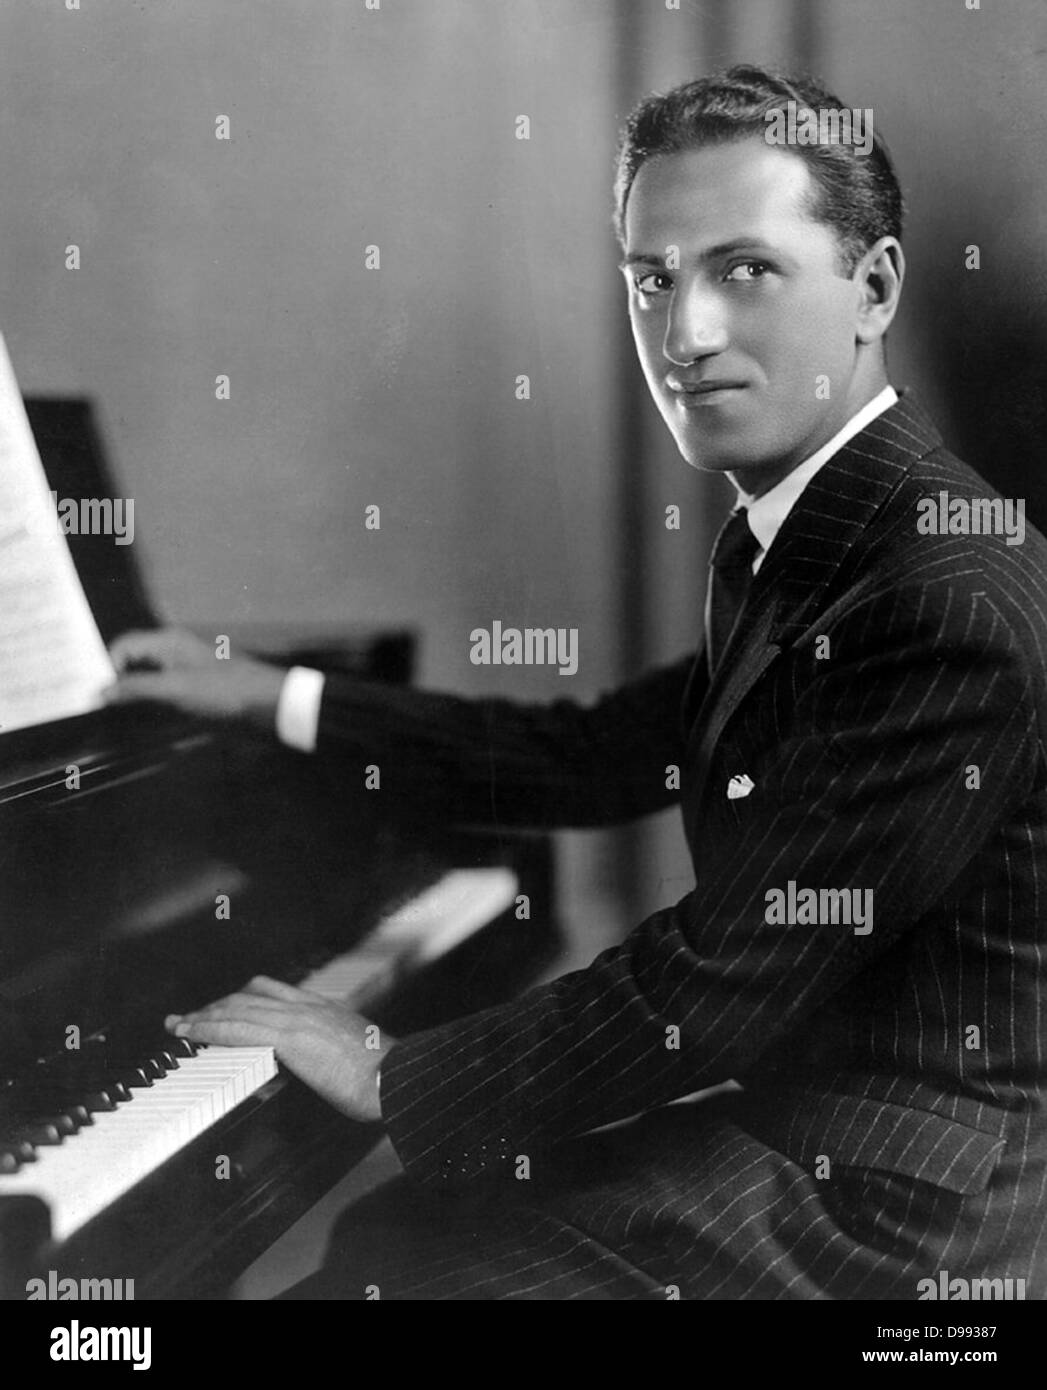 George Gershwin (1898 - 1937), compositor y pianista estadounidense. Las composiciones de Gershwin abarca ambos géneros clásicos y populares. Él escribió la mayoría de sus vocales y de obras teatrales, incluyendo más de una docena de espectáculos de Broadway, en colaboración con su hermano Ira Gershwin Foto de stock